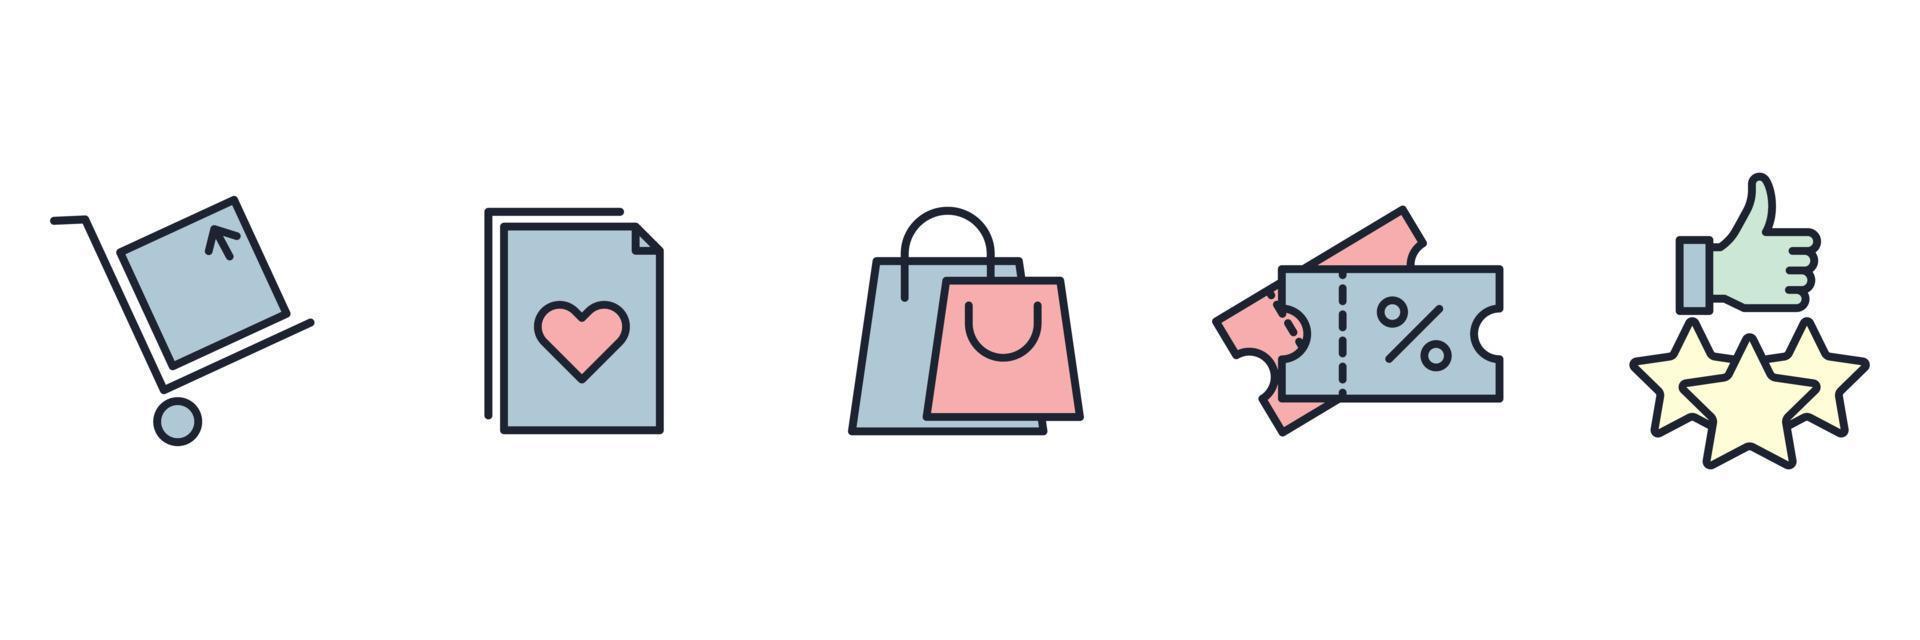 e-commerce, modèle de symbole d'icône de jeu d'achats en ligne pour illustration vectorielle de logo de collection de conception graphique et web vecteur